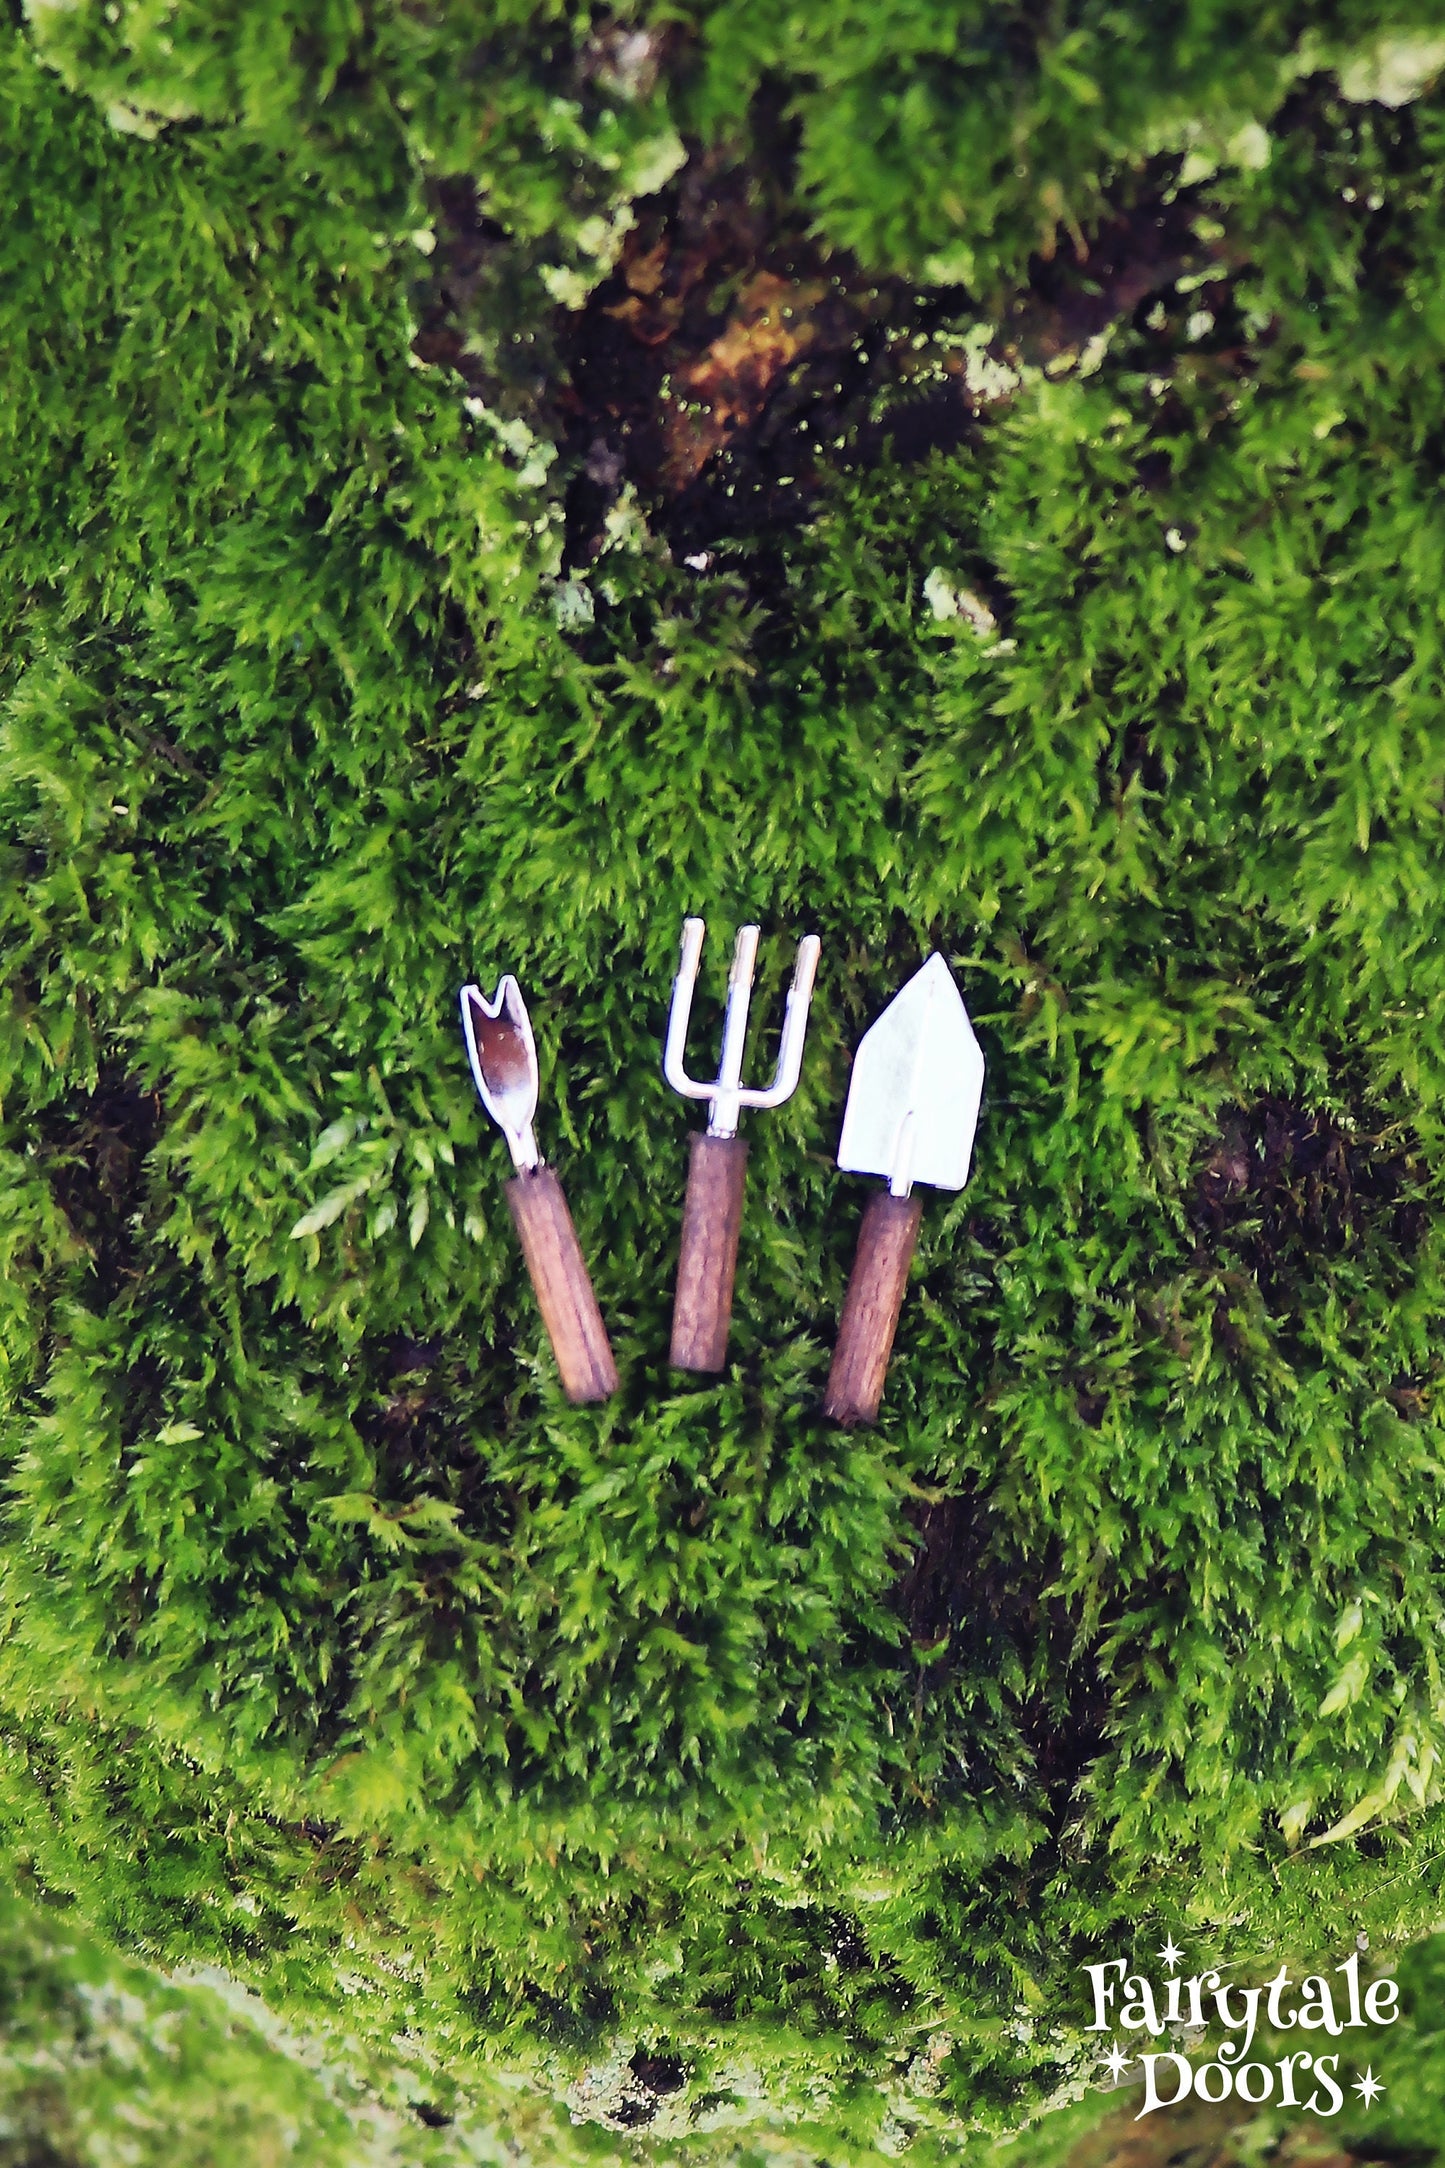 Miniature garden tools